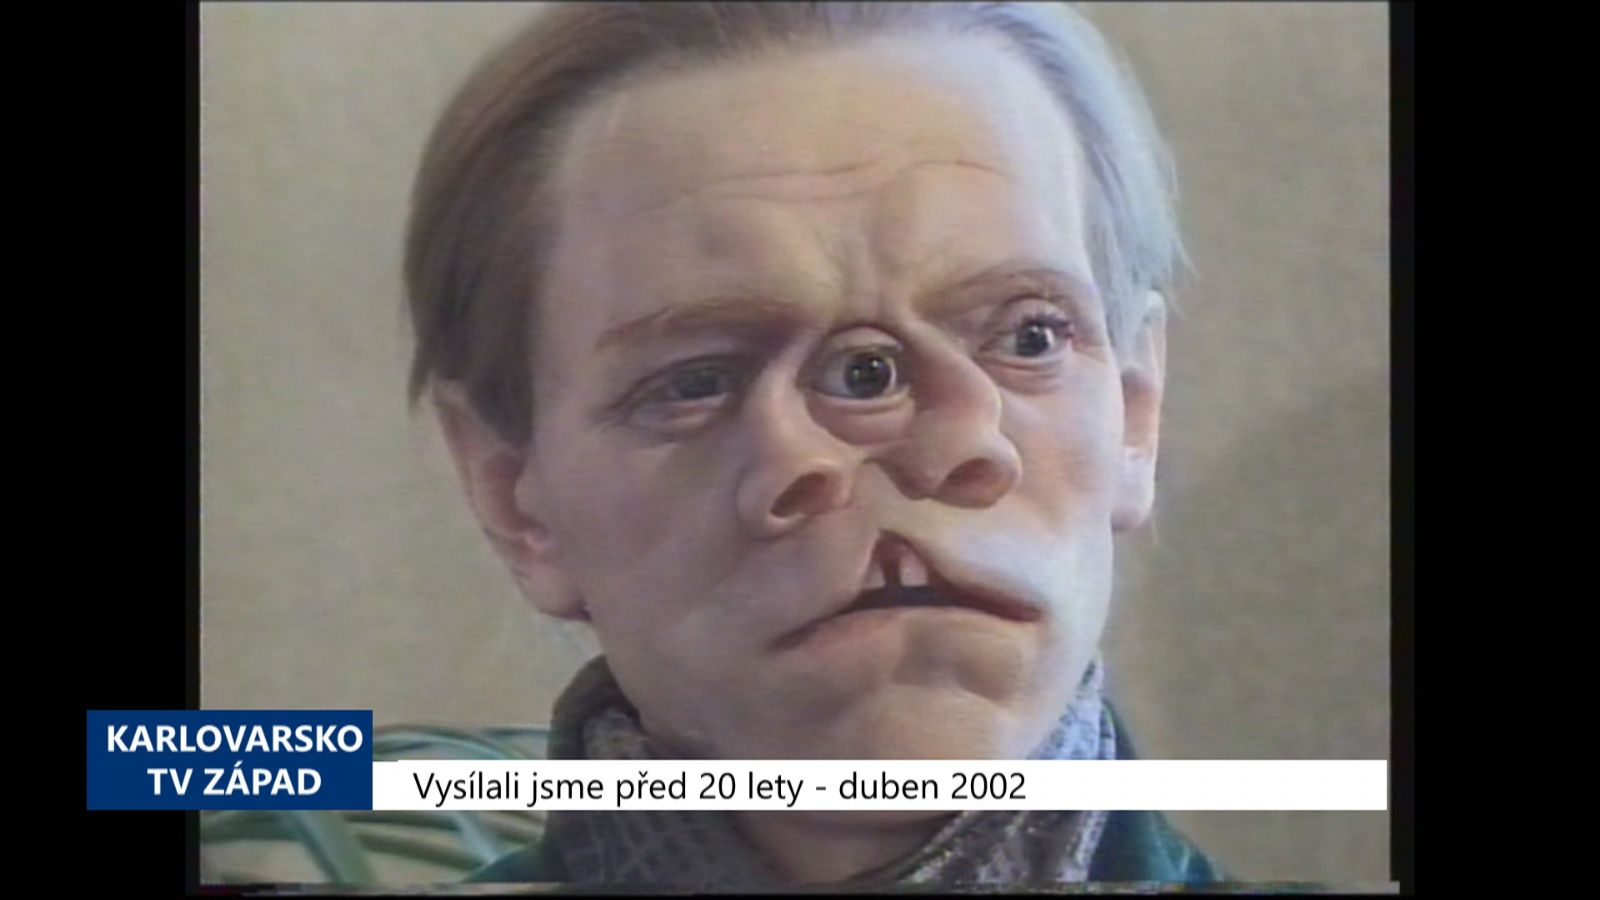 2002 – Cheb: Probíhá výstava figurín lidských anomálií (TV Západ)